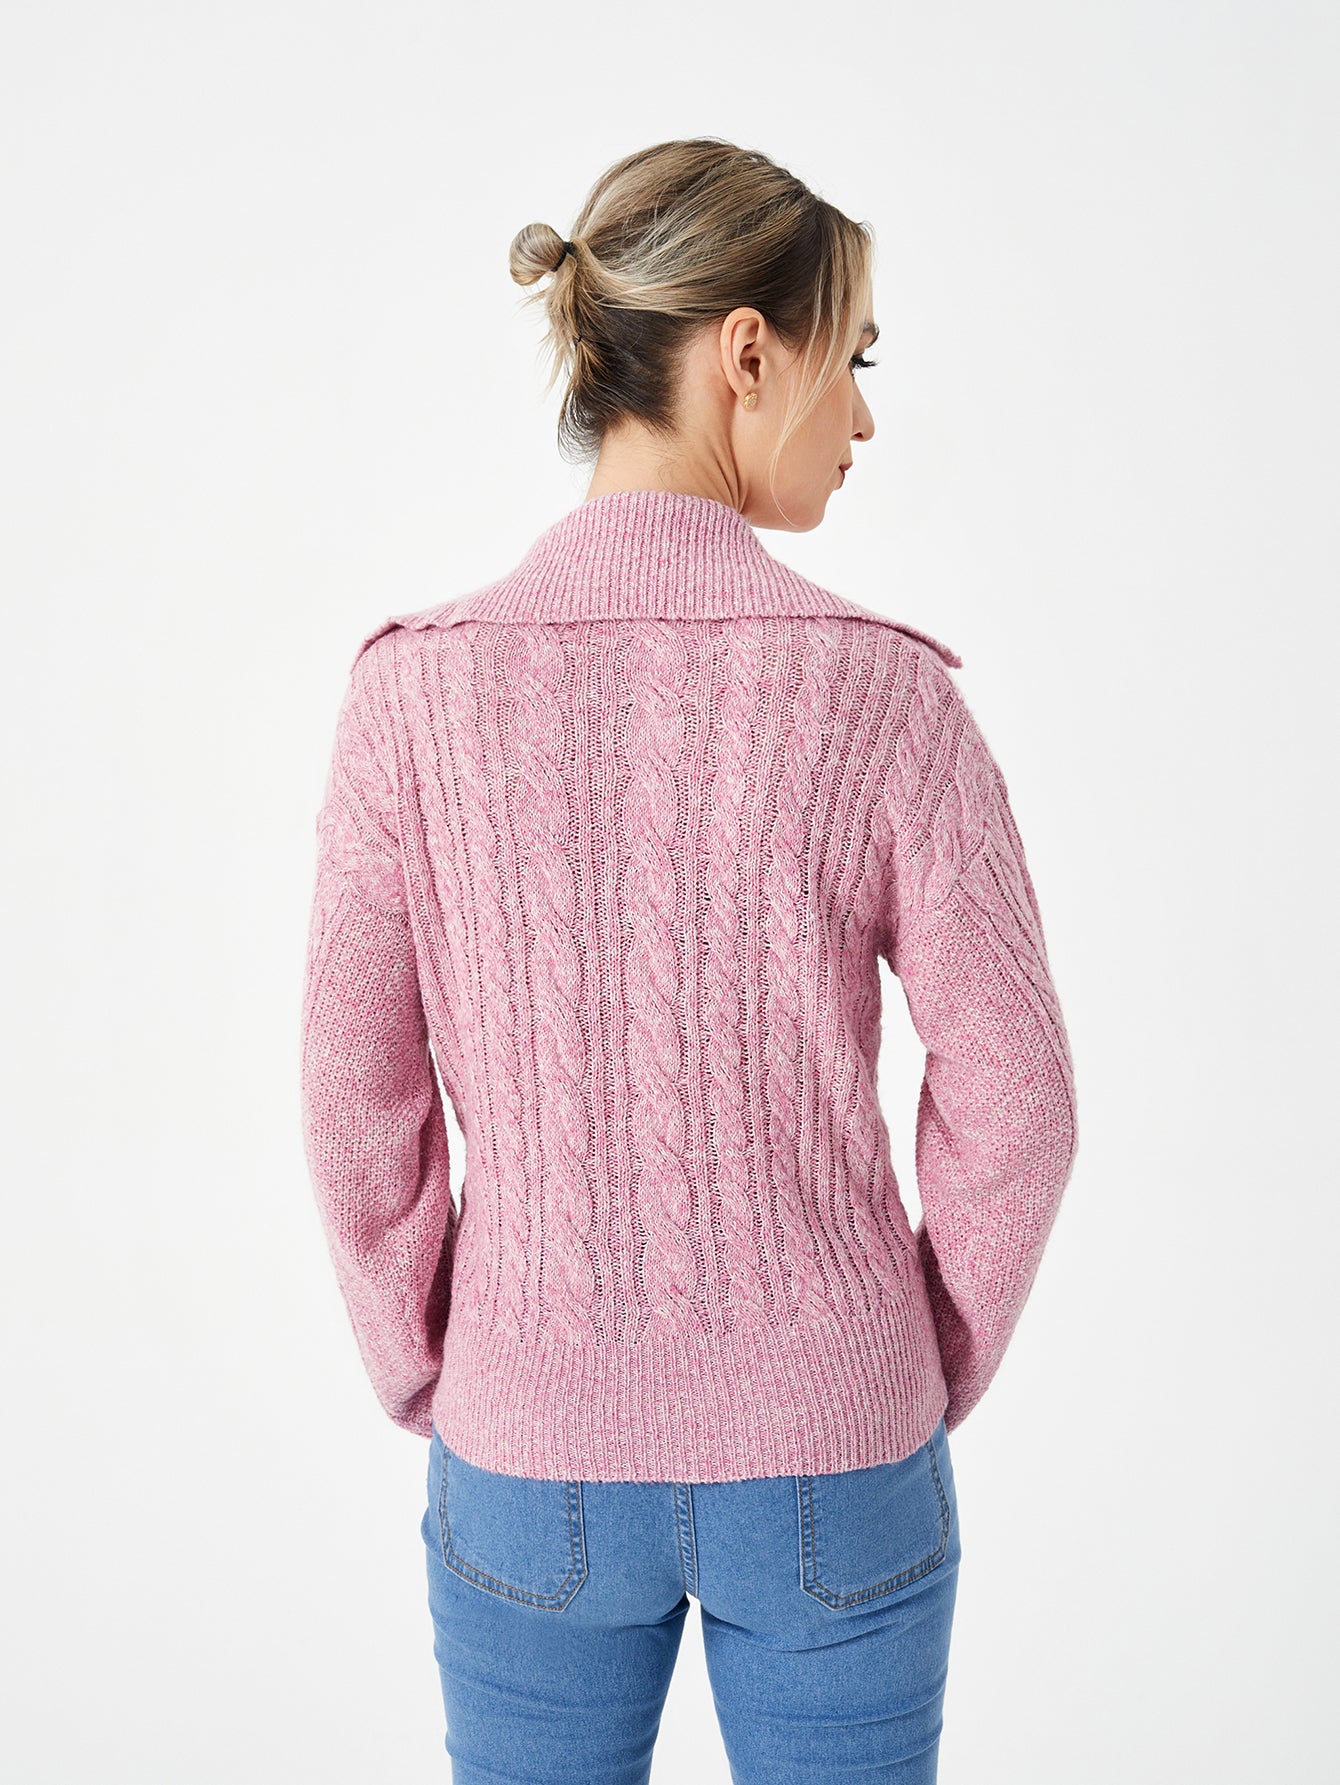 Women's Warm Casual Lapel Sweater - Carvan Mart